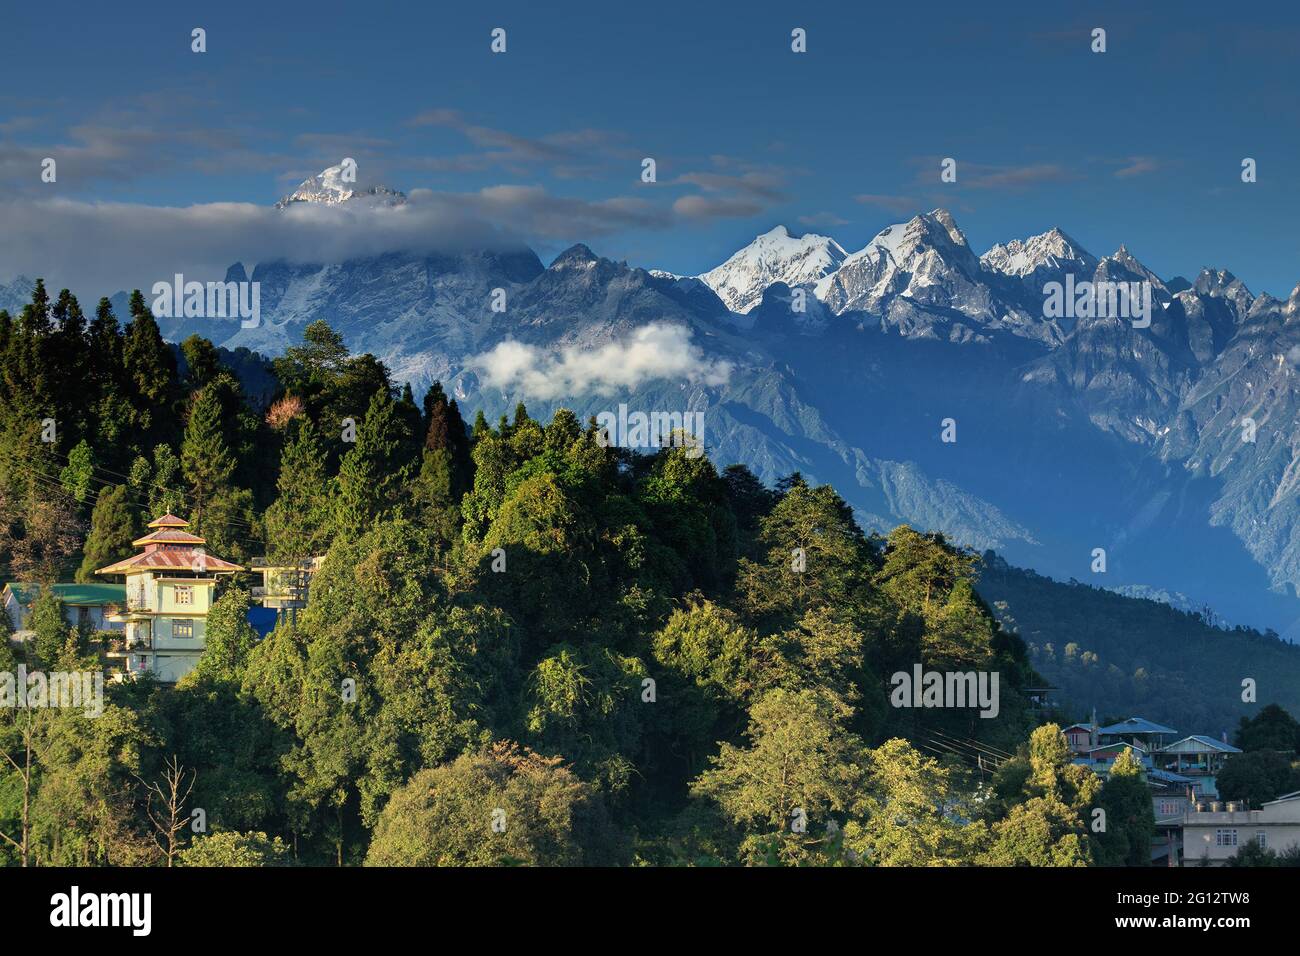 Schöne Aussicht auf die Himalaya-Berge bei Ravangla, Sikkim. Himalaya ist die große Bergkette in Asien mit mehr als 50 Gipfeln , meist höchsten. Stockfoto